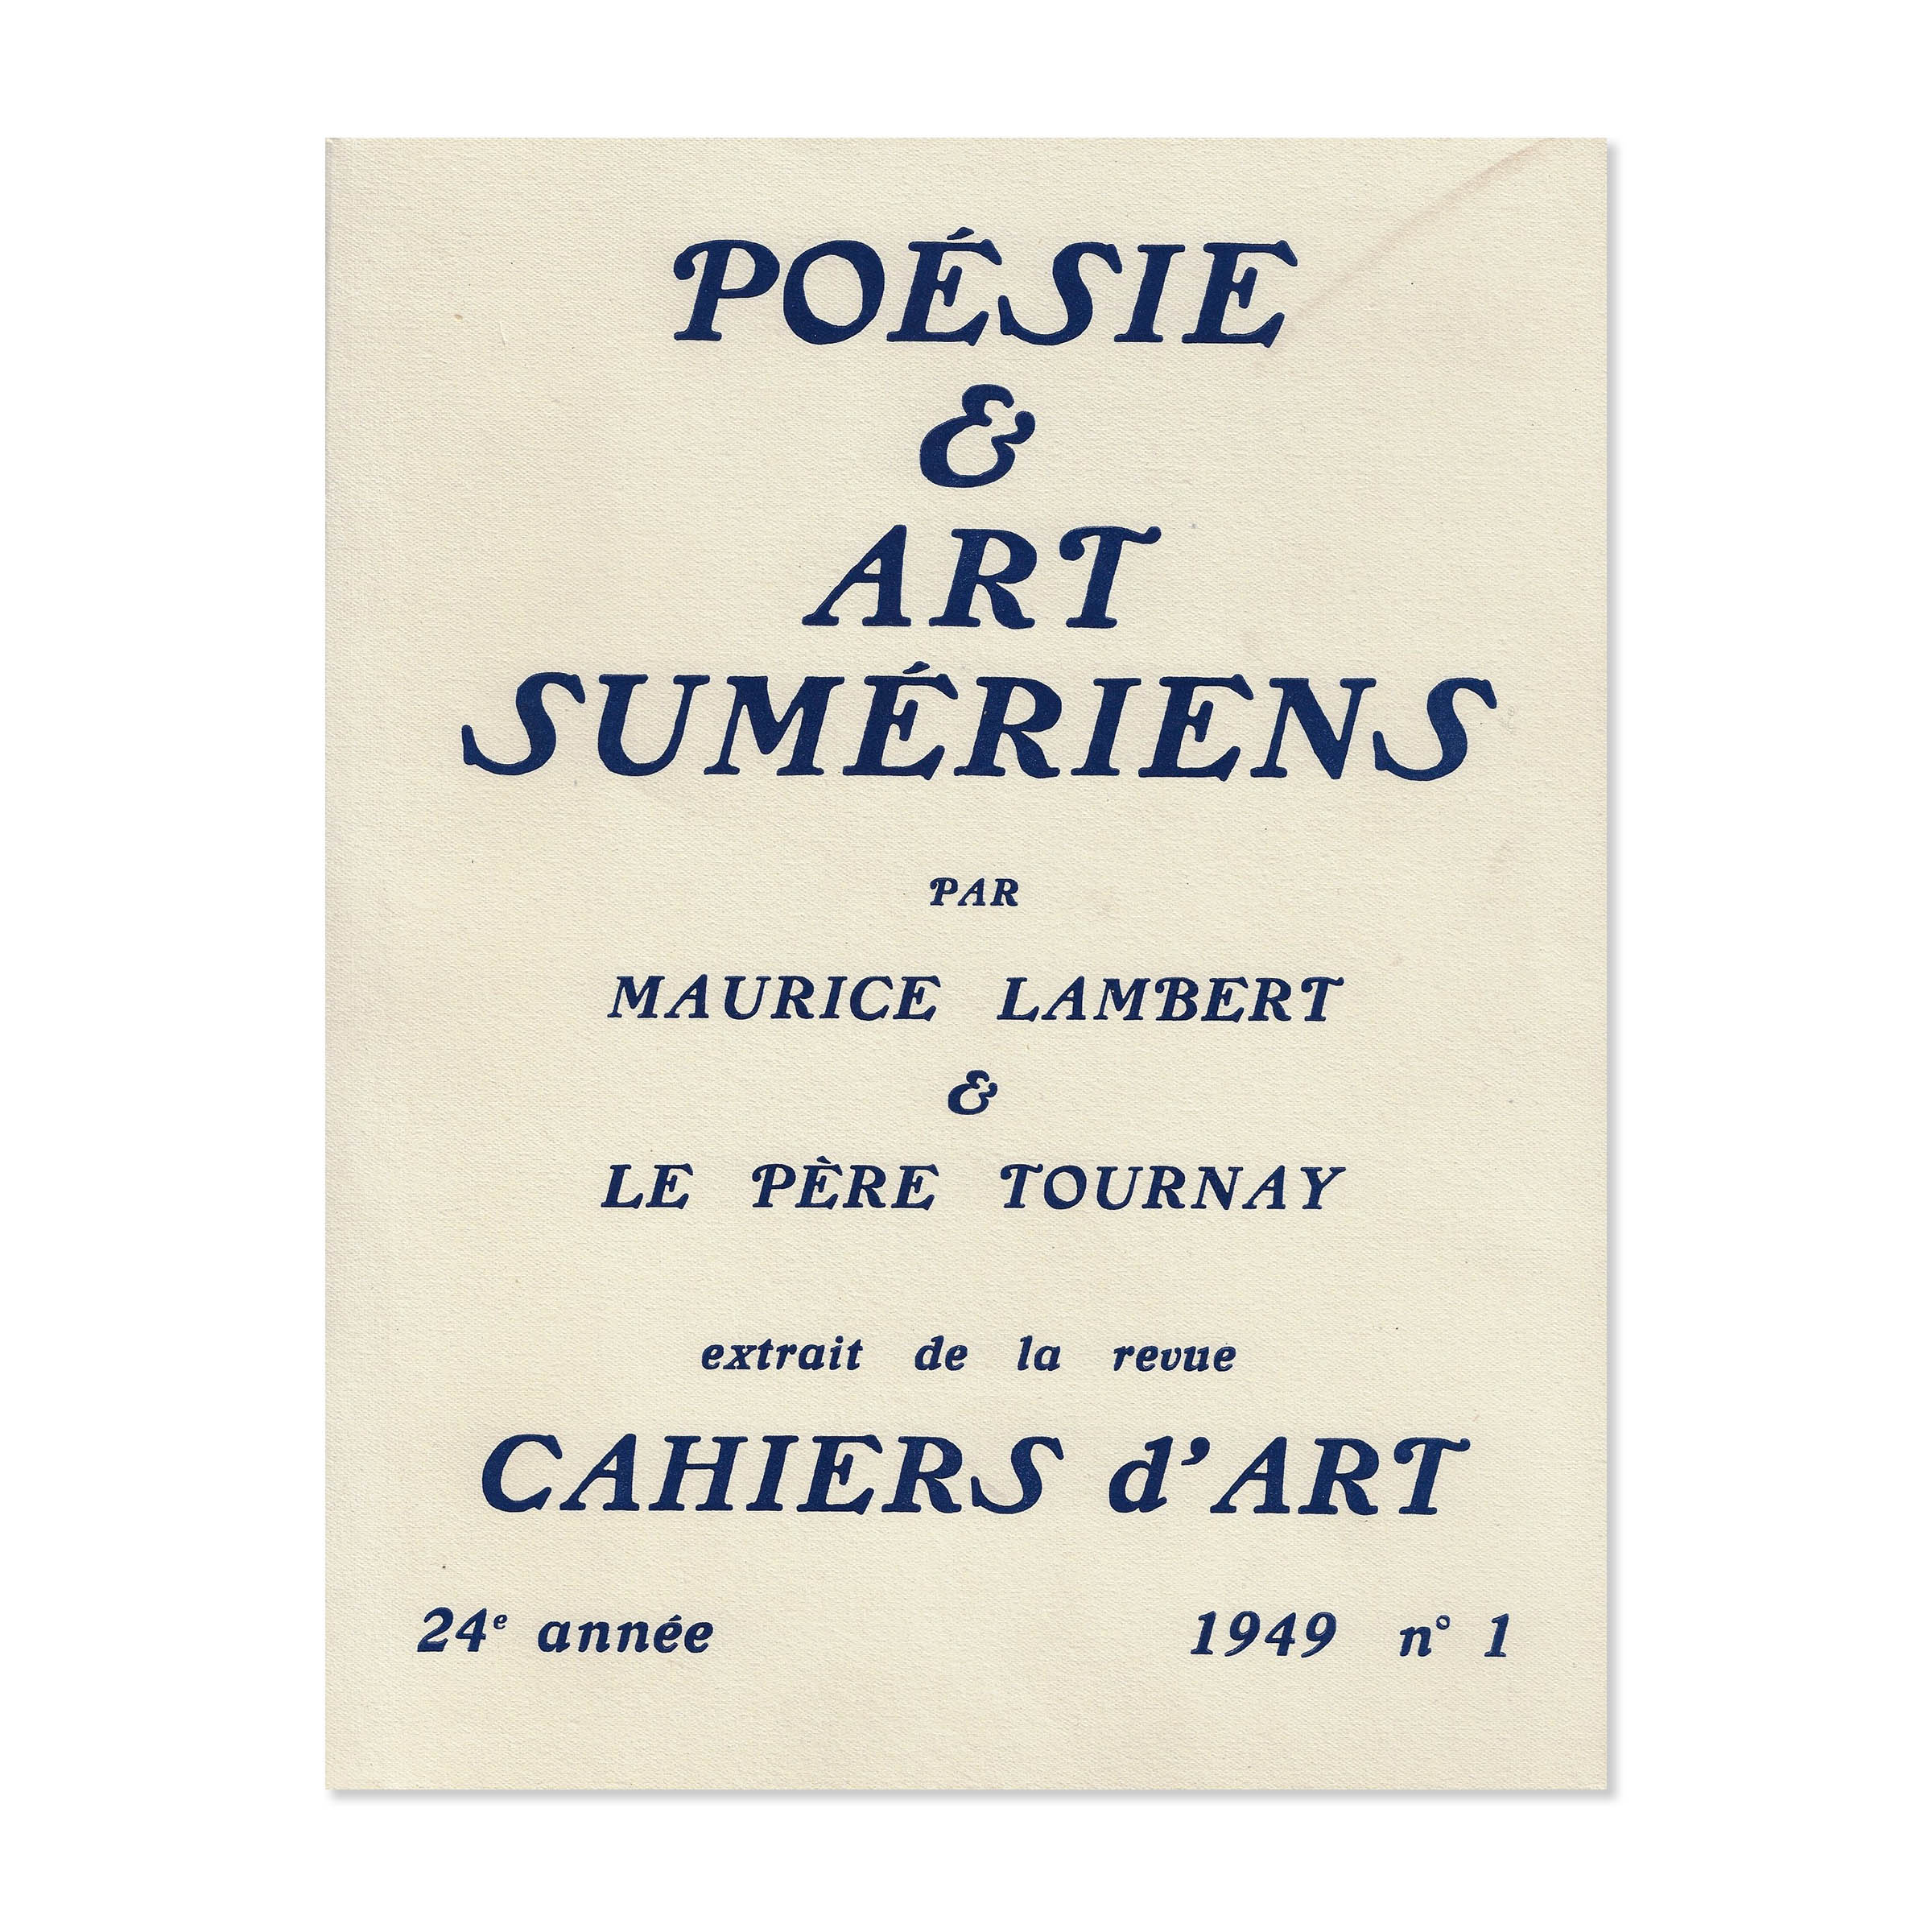 Poésie et art sumériens. Cahiers d 'art 1949